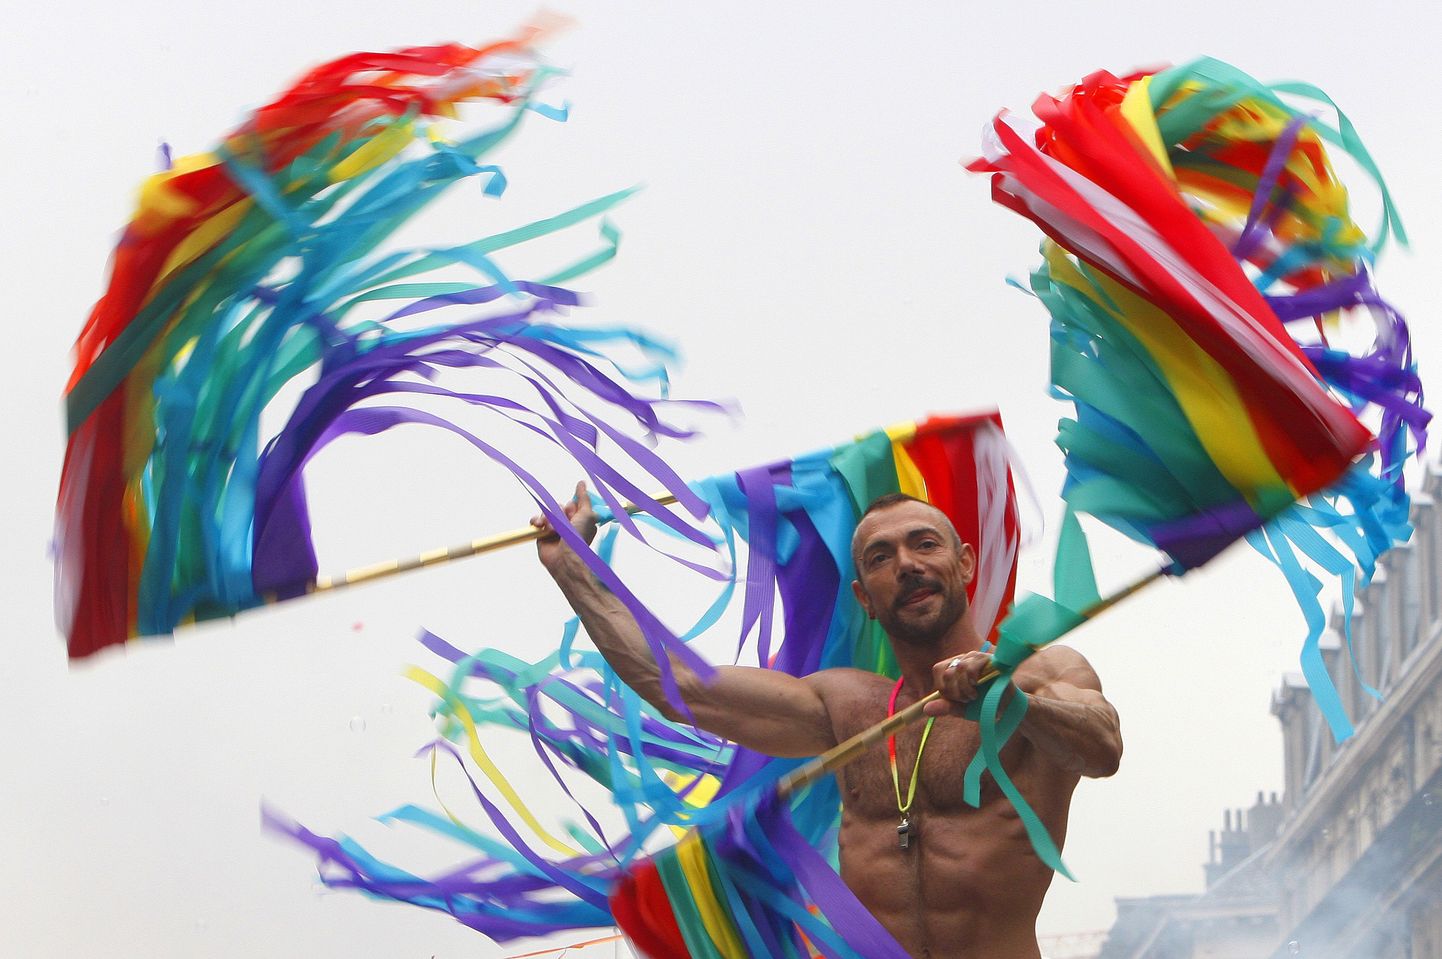 Pilt on tehtud Brüsselis toimunud homoparaadi ajal.